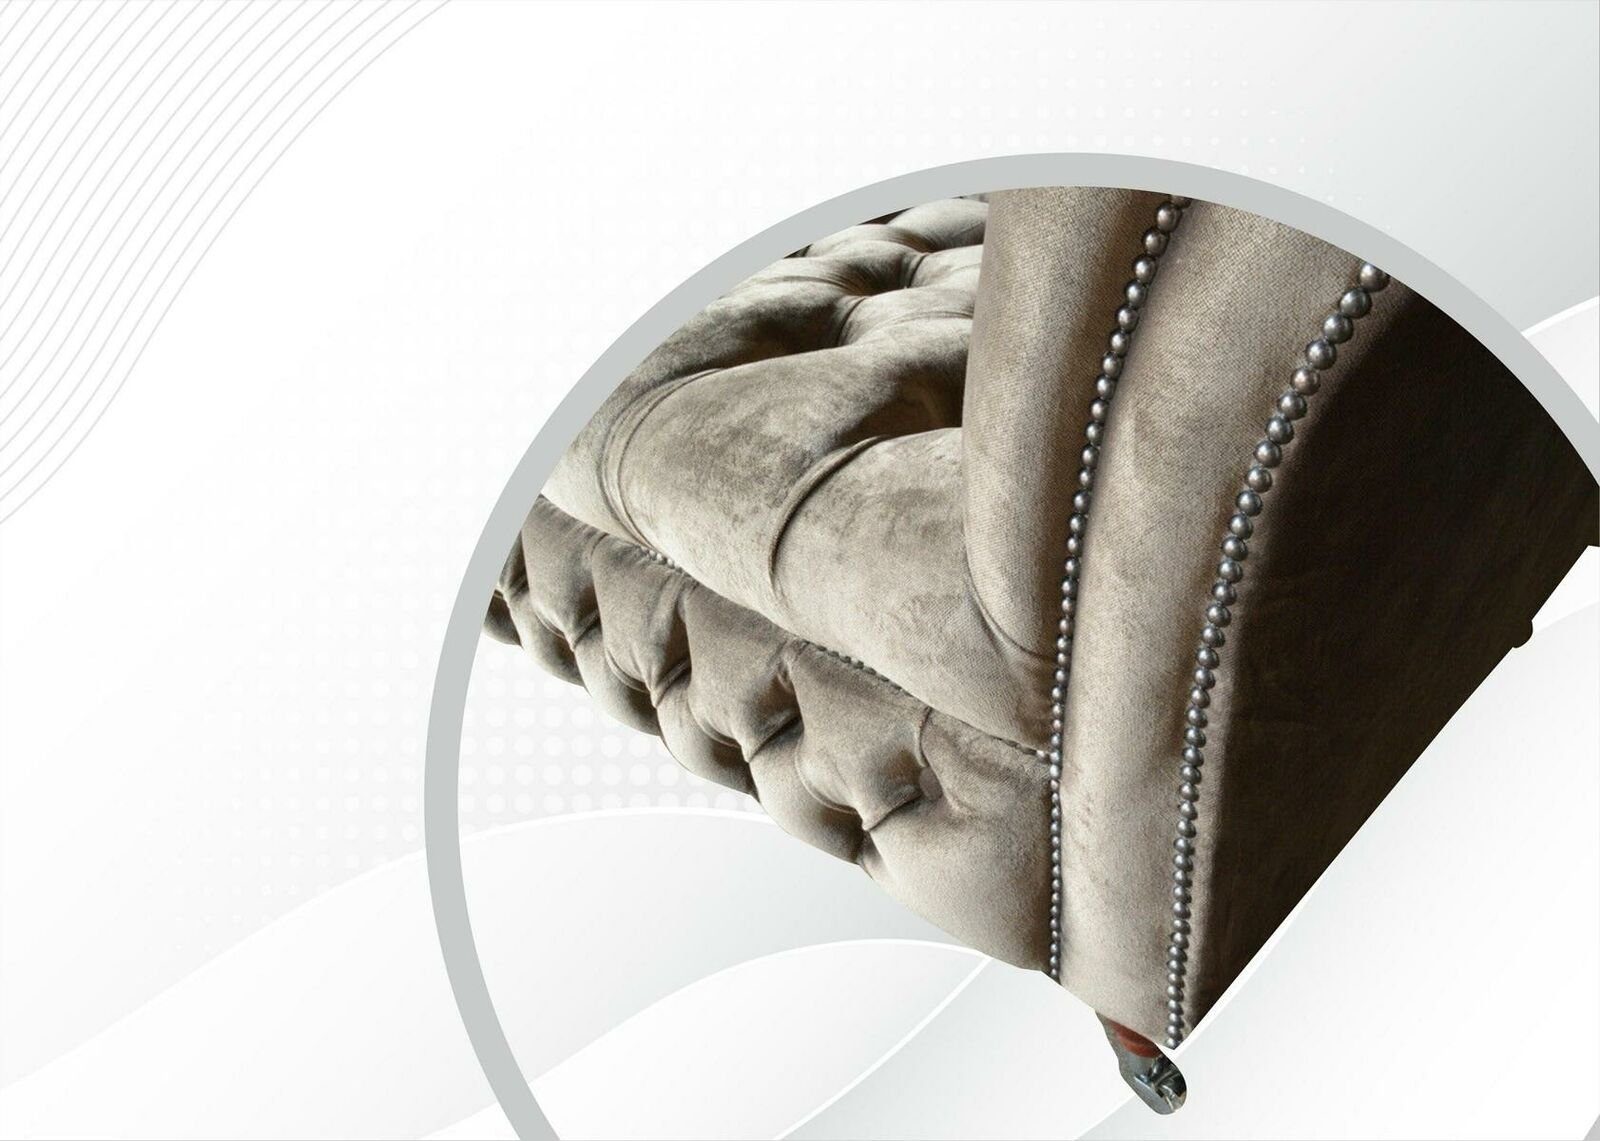 Chesterfield-Sofa JVmoebel in Grauer luxus 3-Sitzer Made Textil Design Europe Neu, Chesterfield Möbel